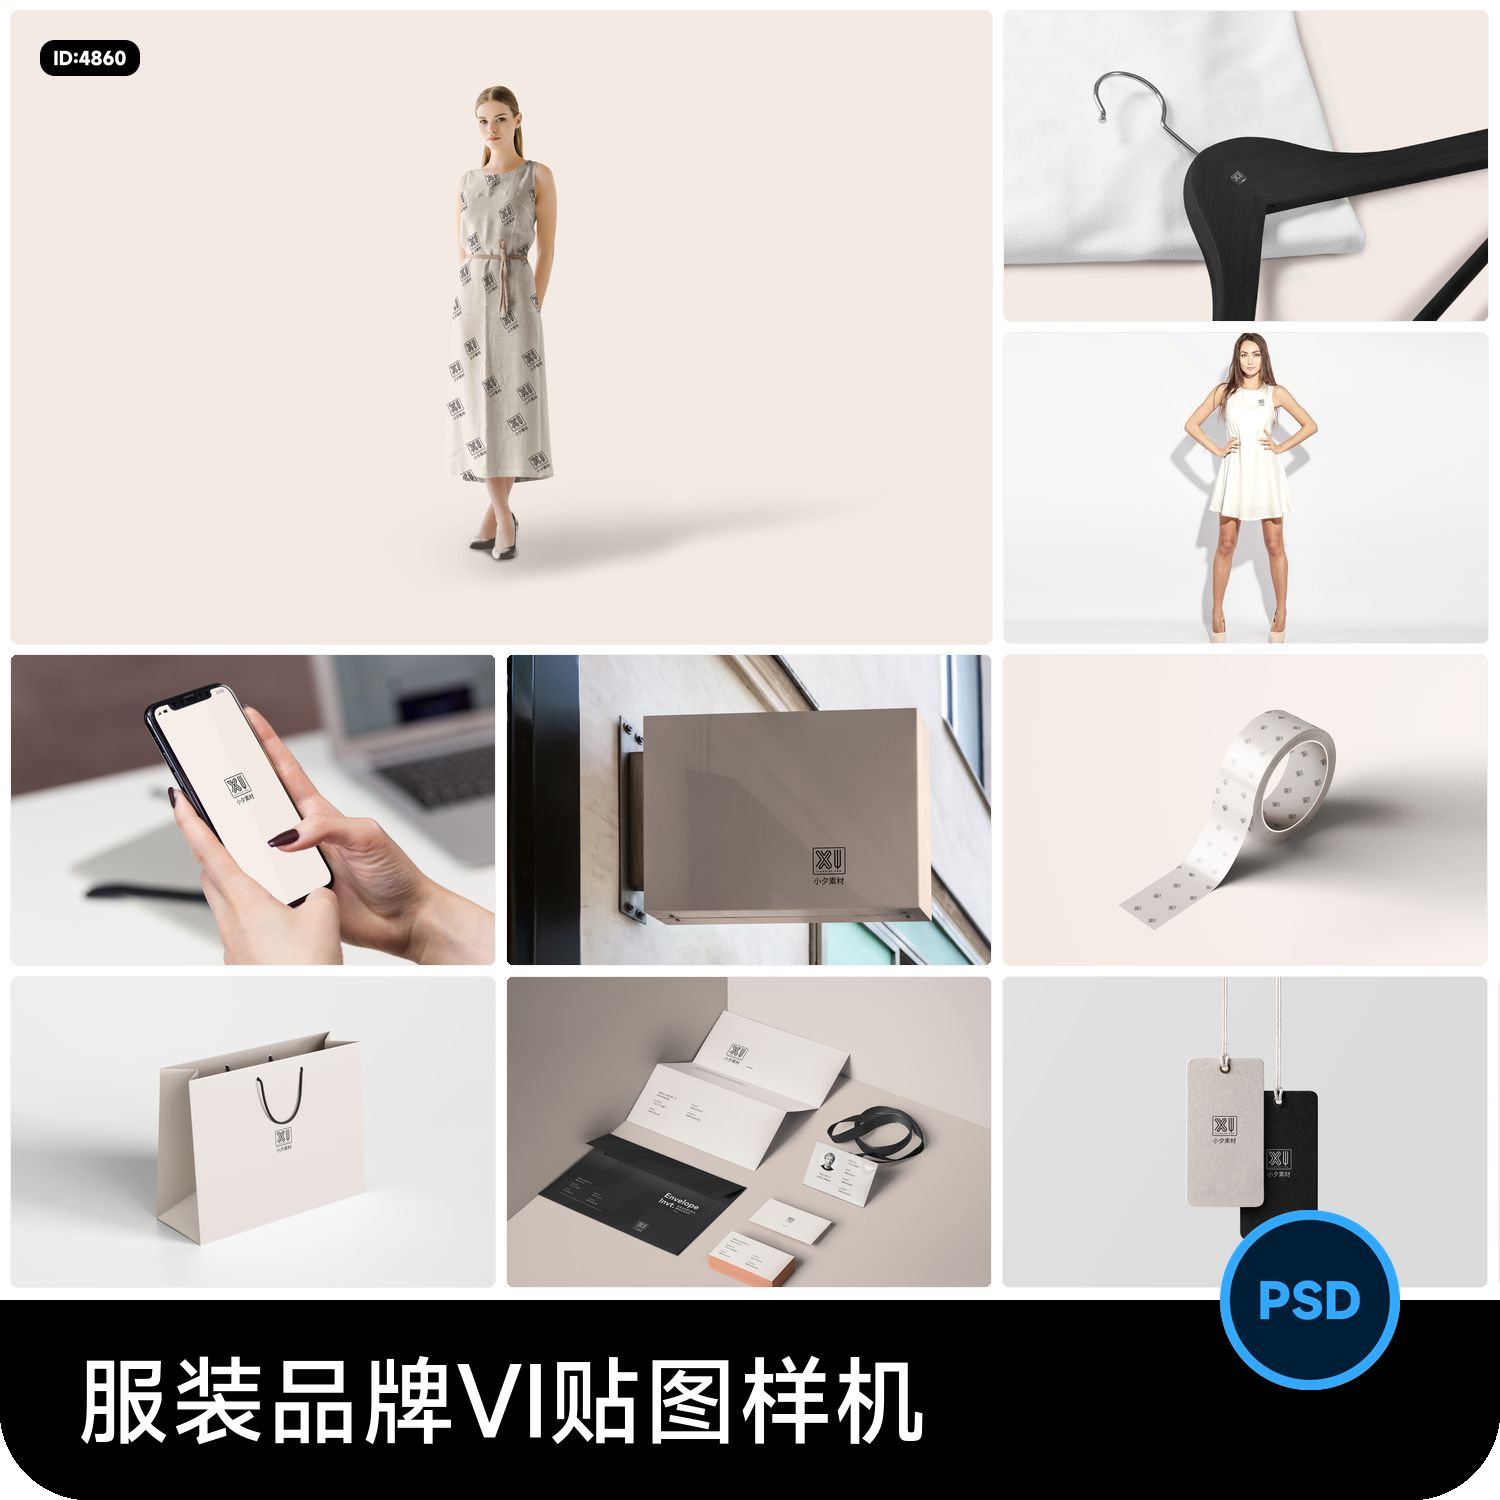 简约文艺高档品牌服装酒店VI提案展示LOGO效果贴图样机PSD素材